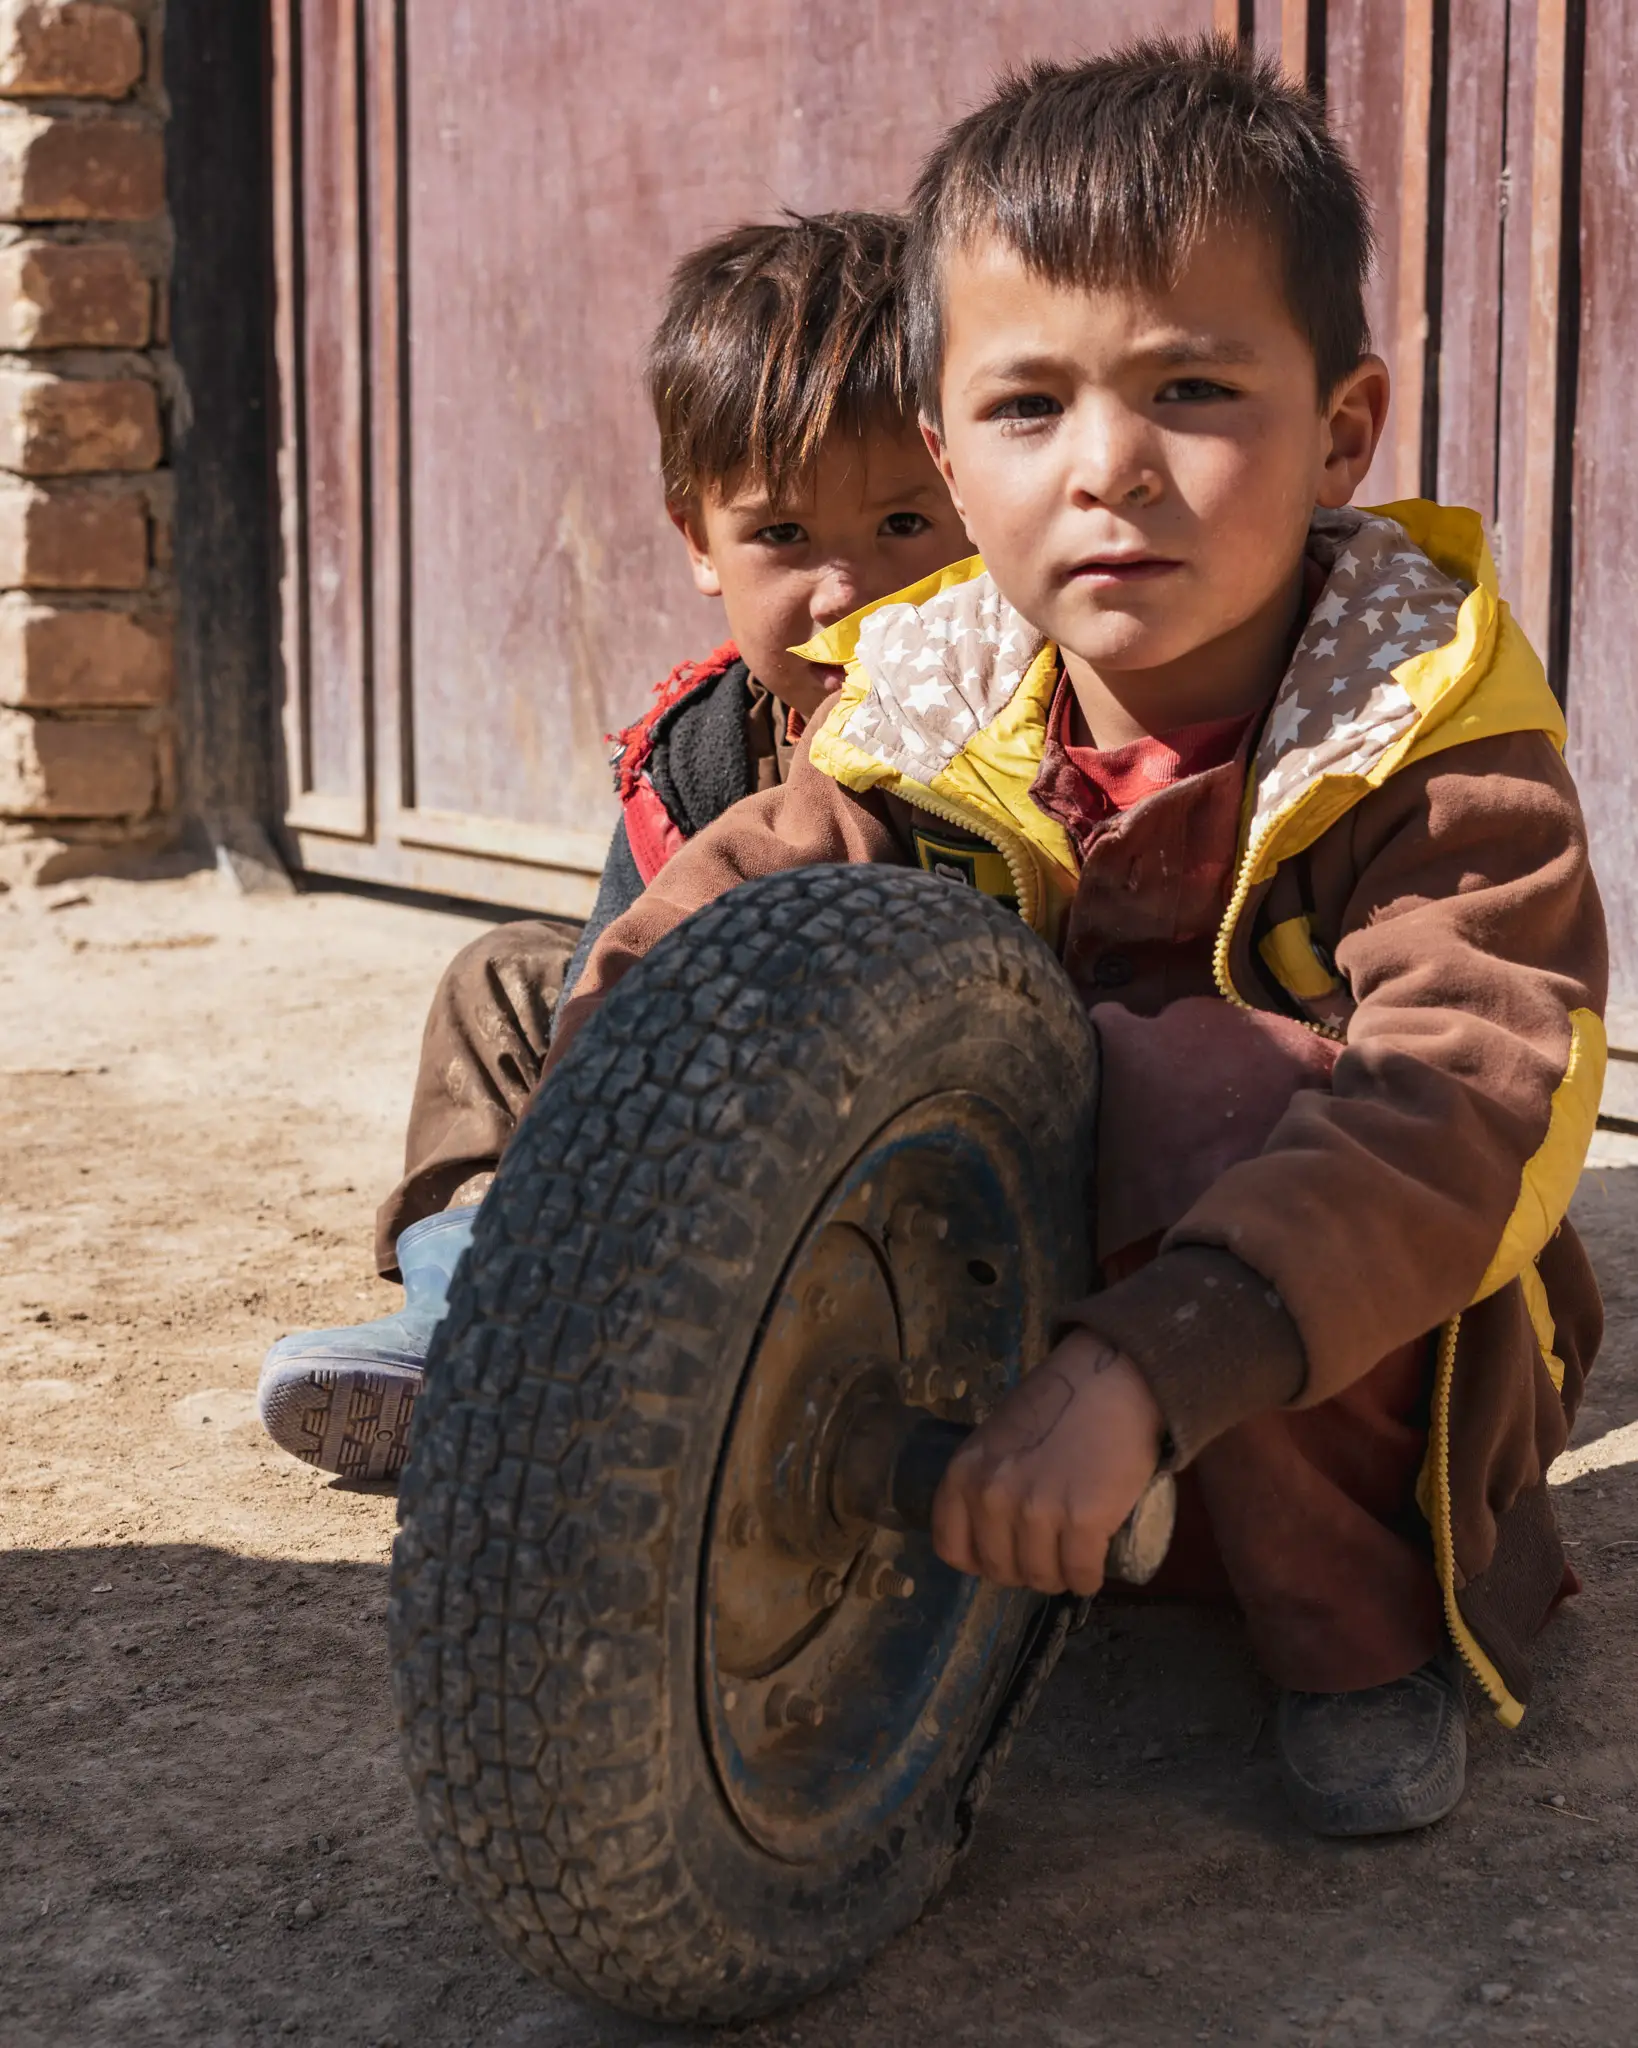 Hazara boys playing together in Bamiyan Province